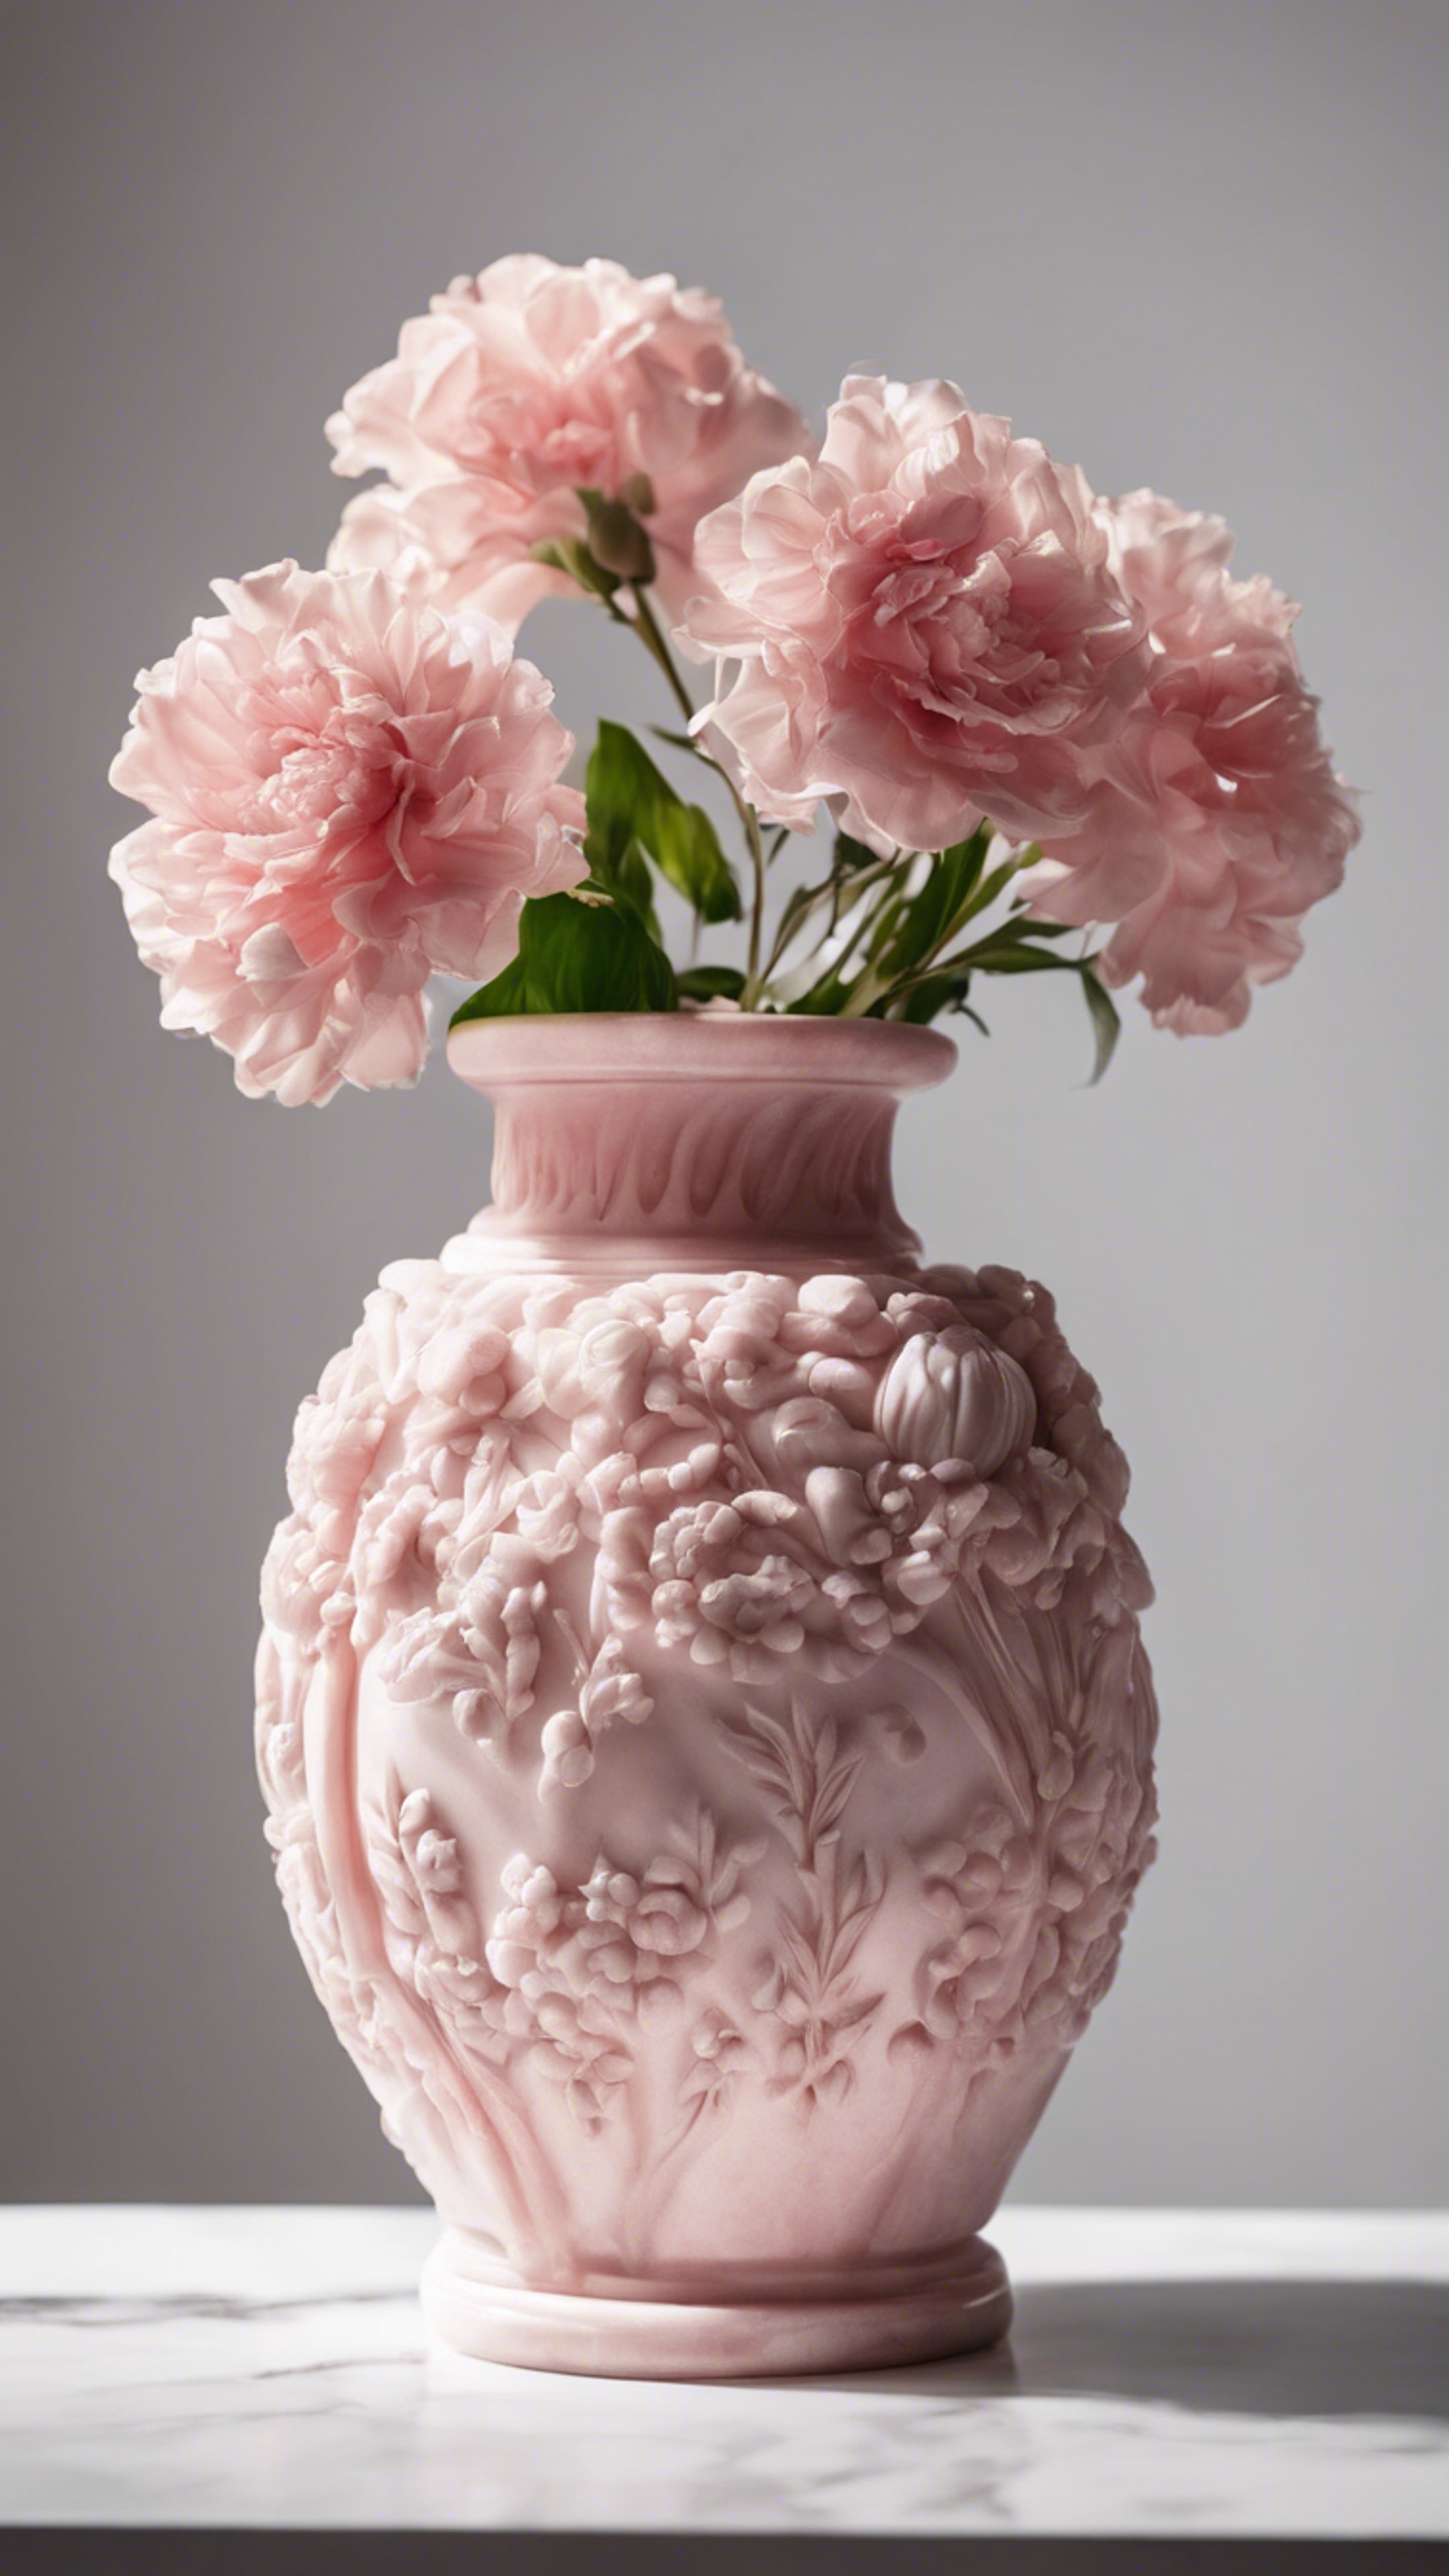 Elegantly carved pink marble flower vase against a white background.壁紙[b14a0bd2340d44aeb9d9]